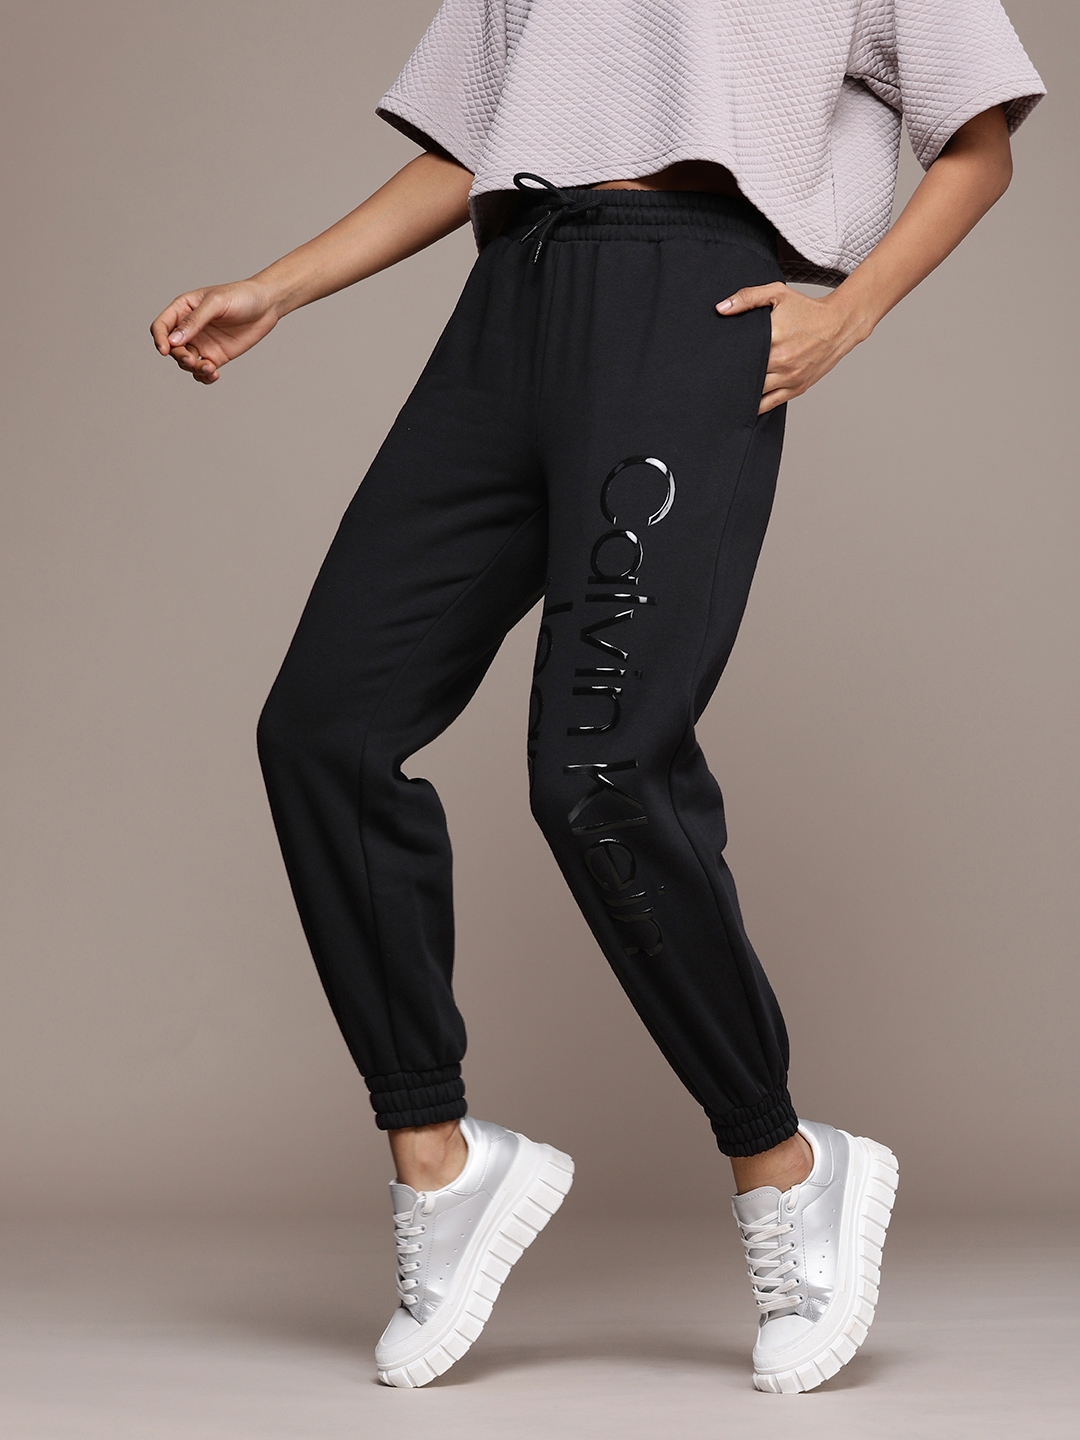 Calvin Klein Women's Athletic Logo Tape Pants - Black | Catch.com.au